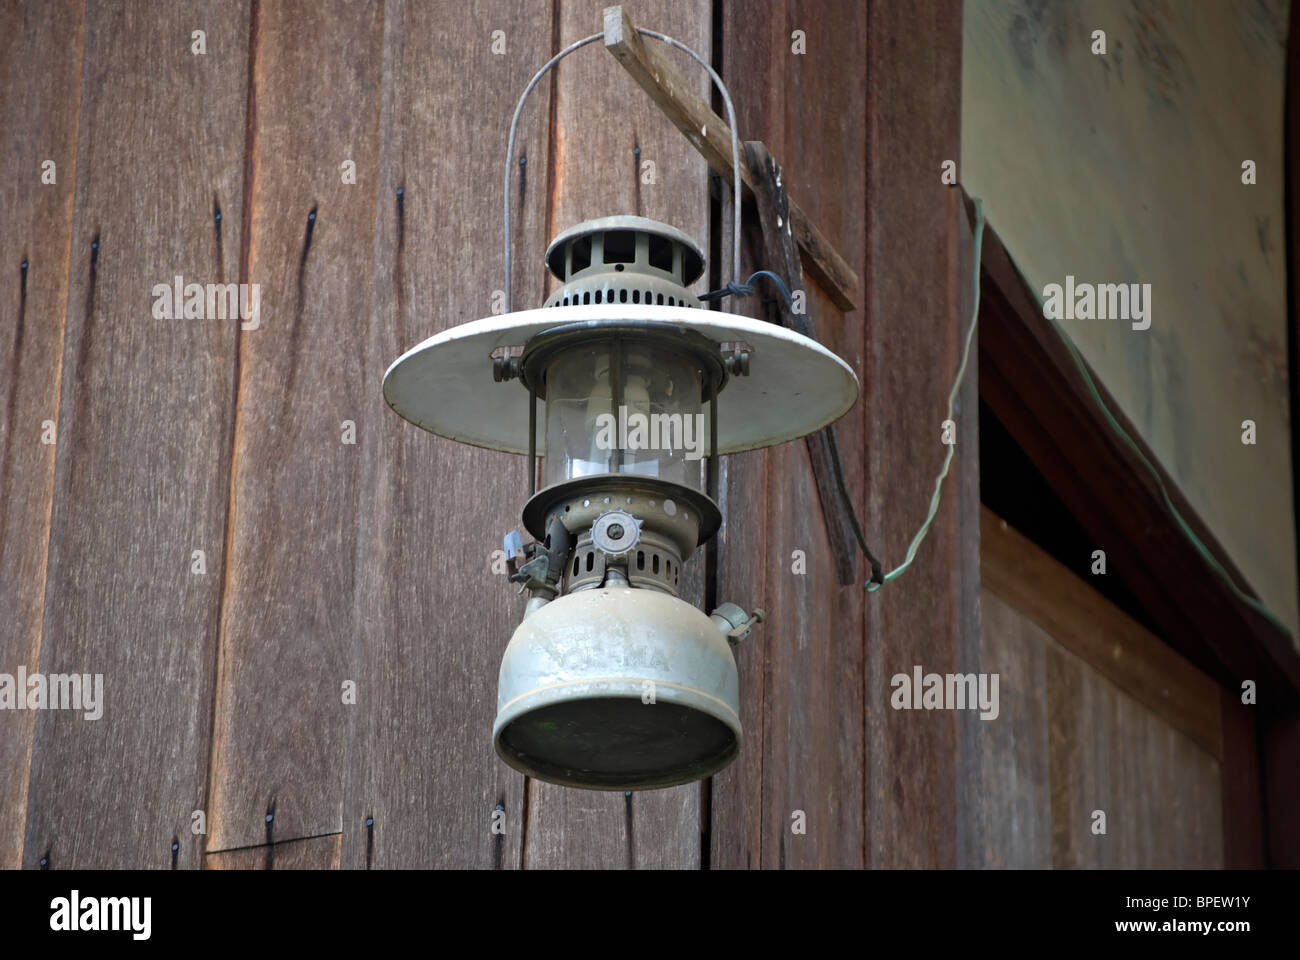 Lampe à pétrole converti pour une utilisation avec l'électricité et tenant une ampoule basse énergie, dans une maison de Phetchabun, Thaïlande, Asie du sud-est Banque D'Images